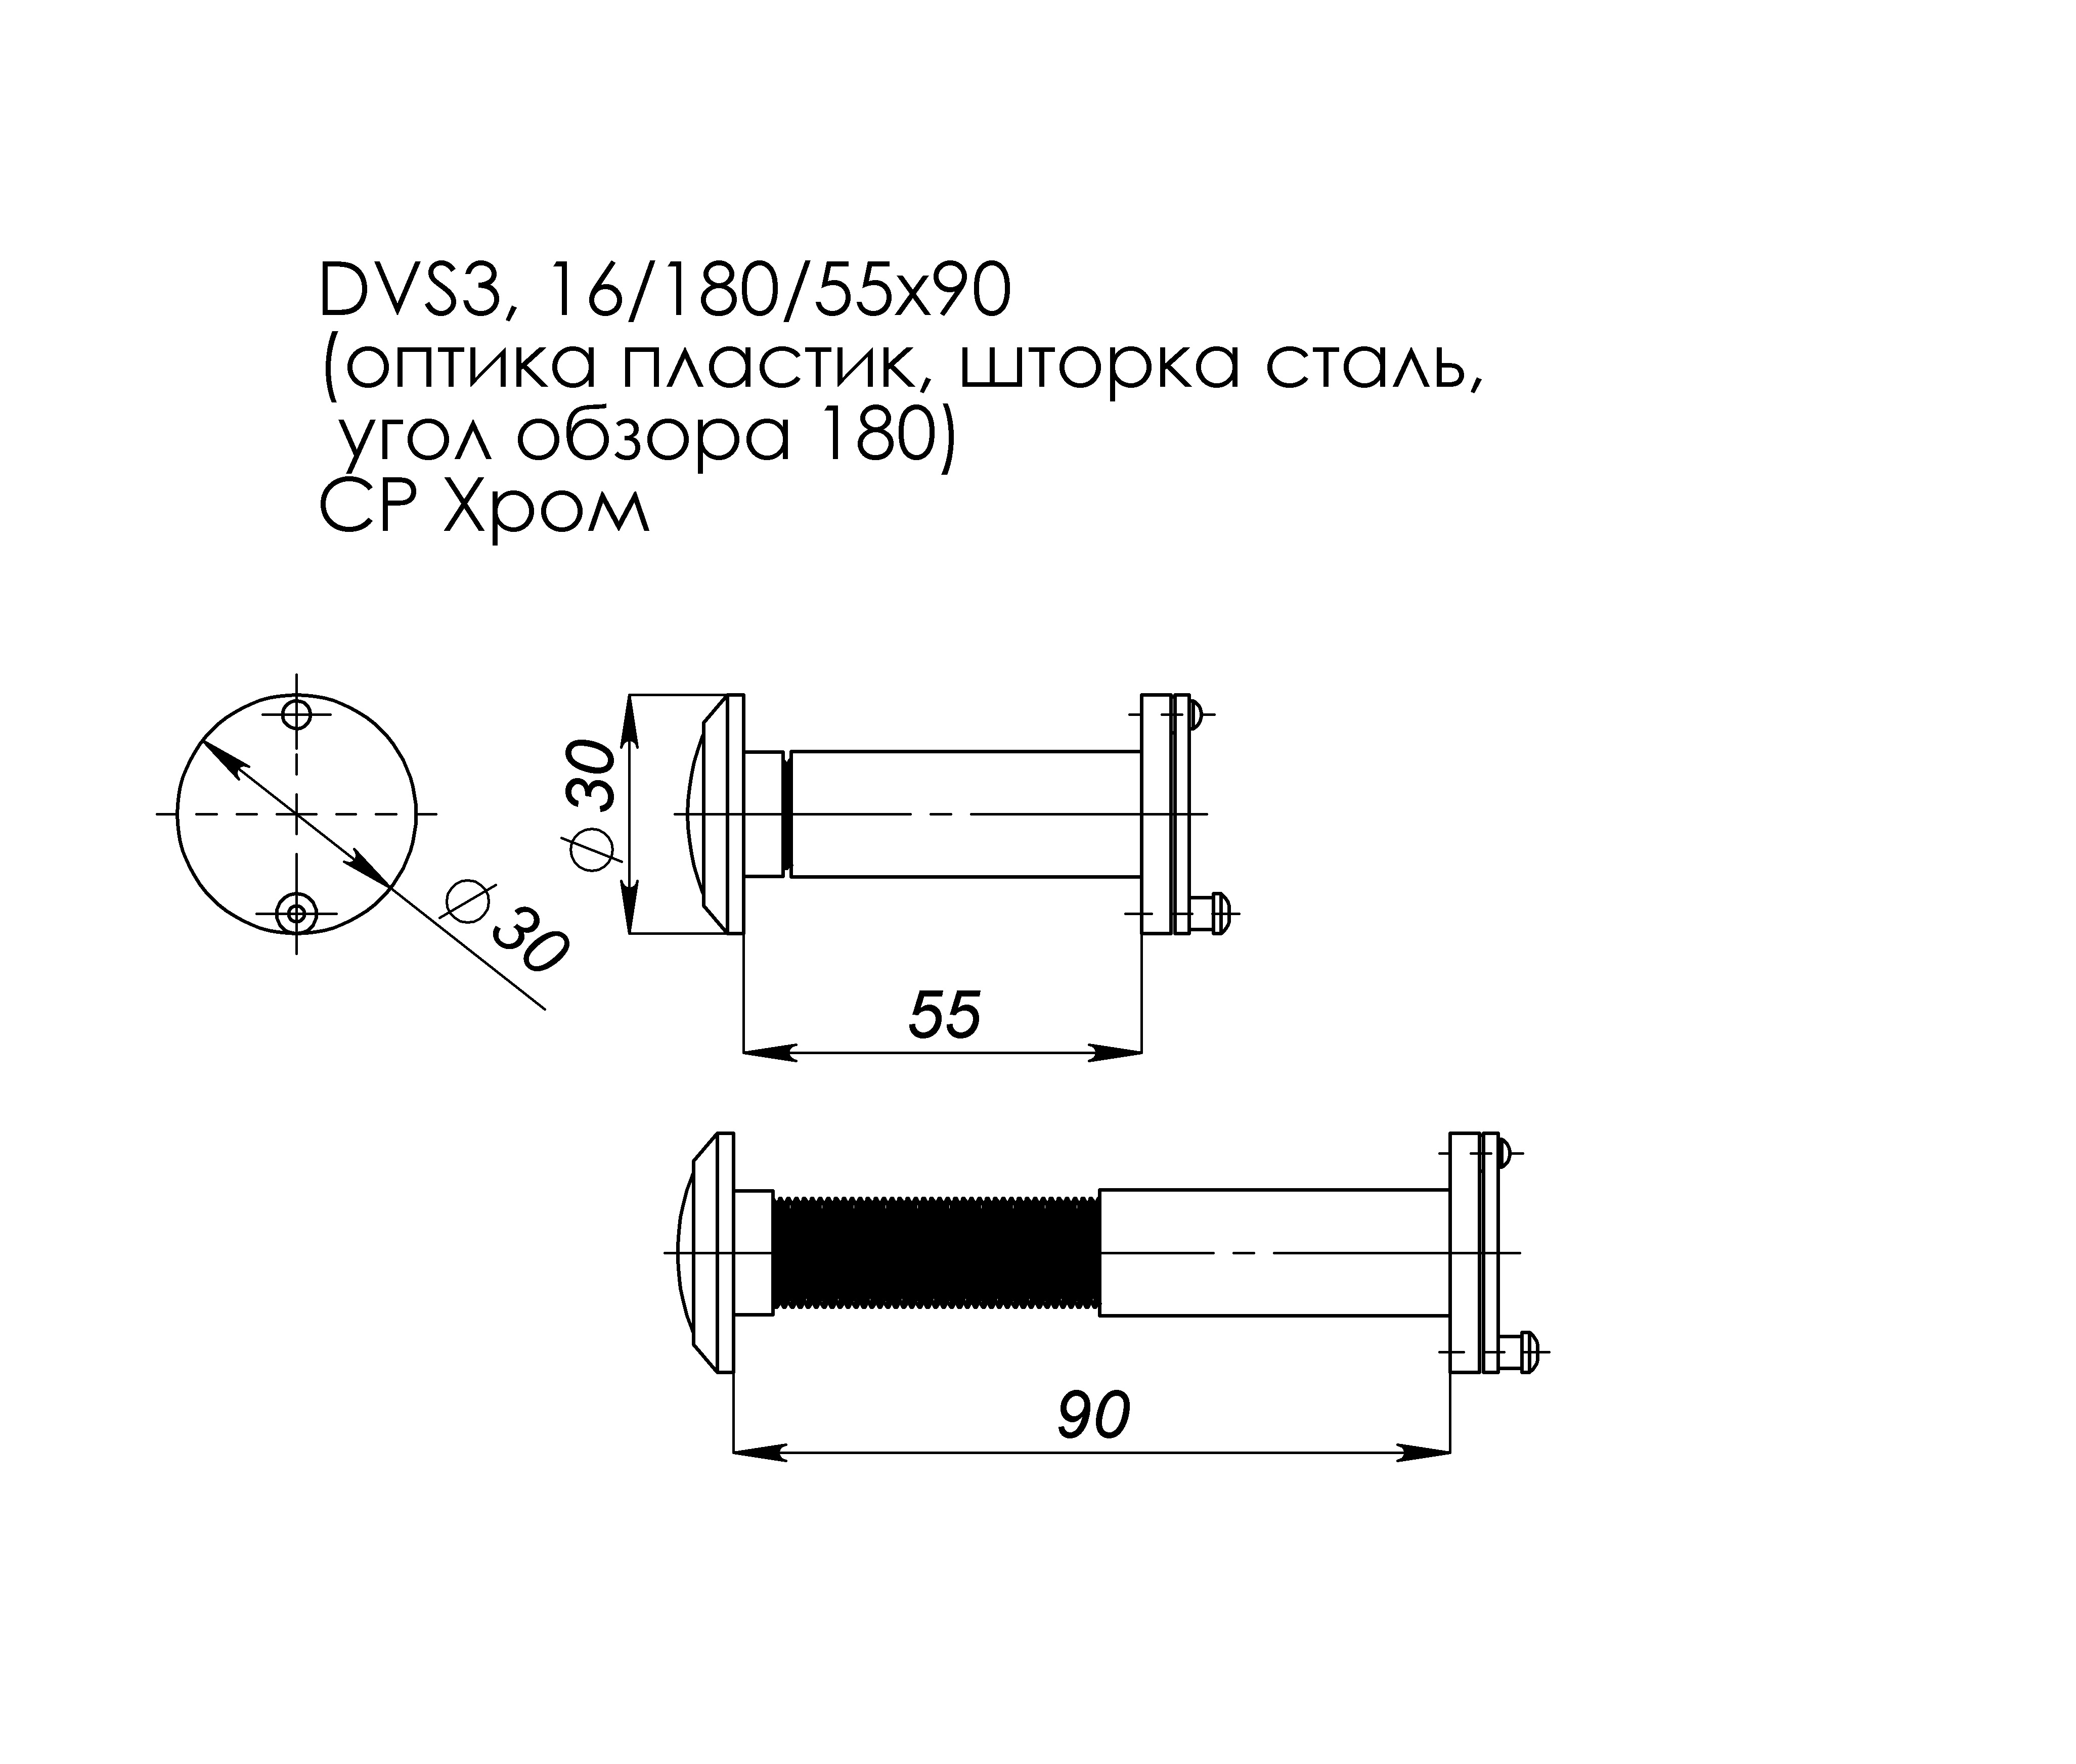 Глазок дверной, оптика пластик DV 3/90-55/S (VIEWER 3 DVS) CP хром